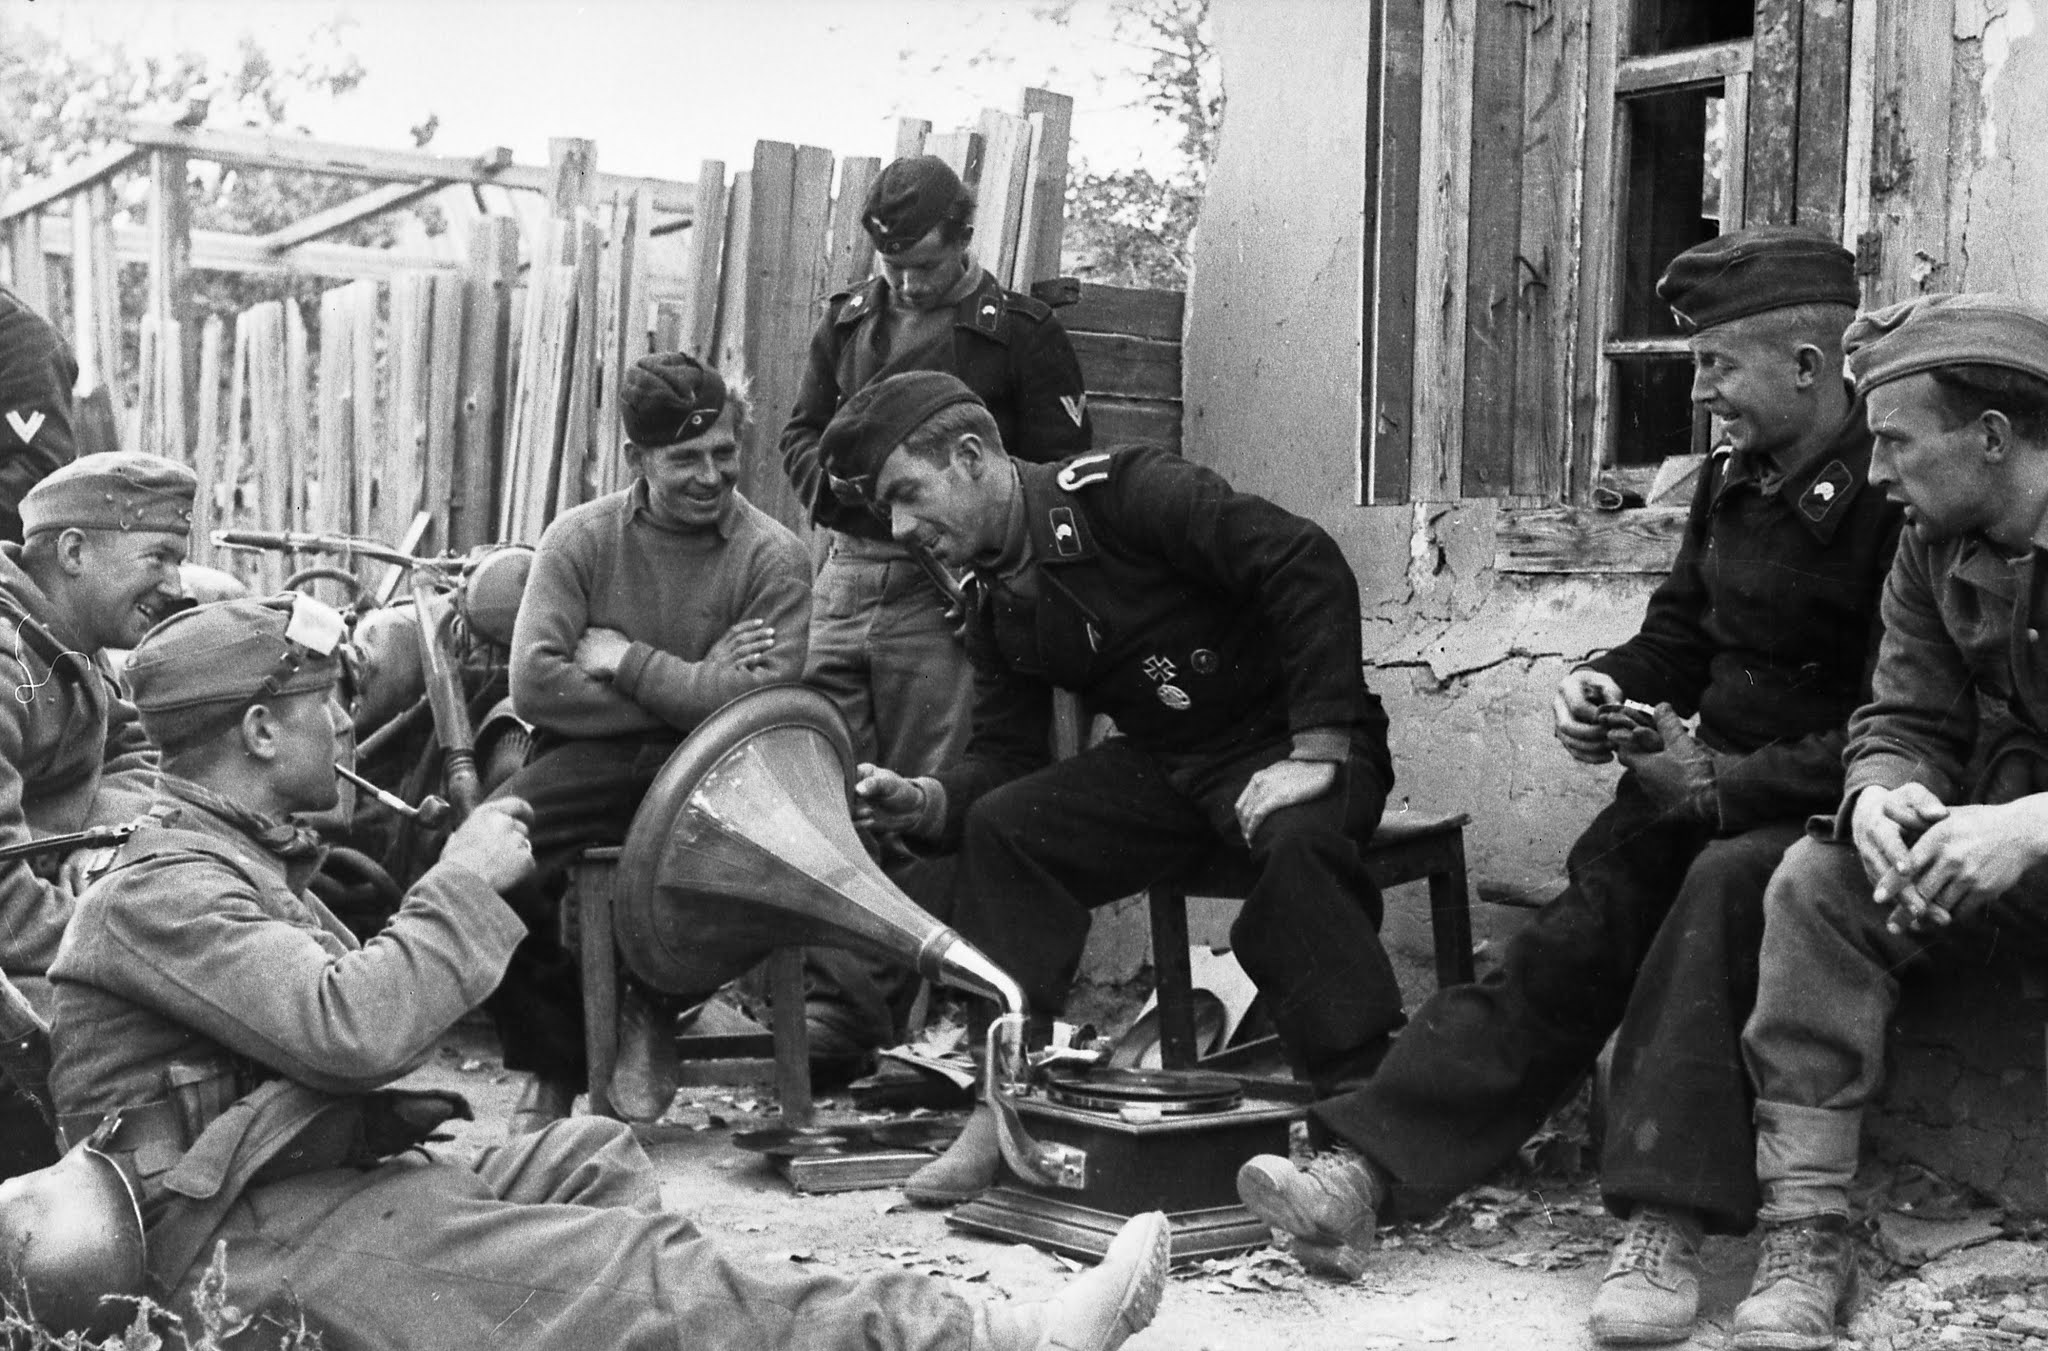 Быт великой отечественной. Немецкий патефон времен второй мировой войны. Солдаты вермахта 1942 год Сталинград.